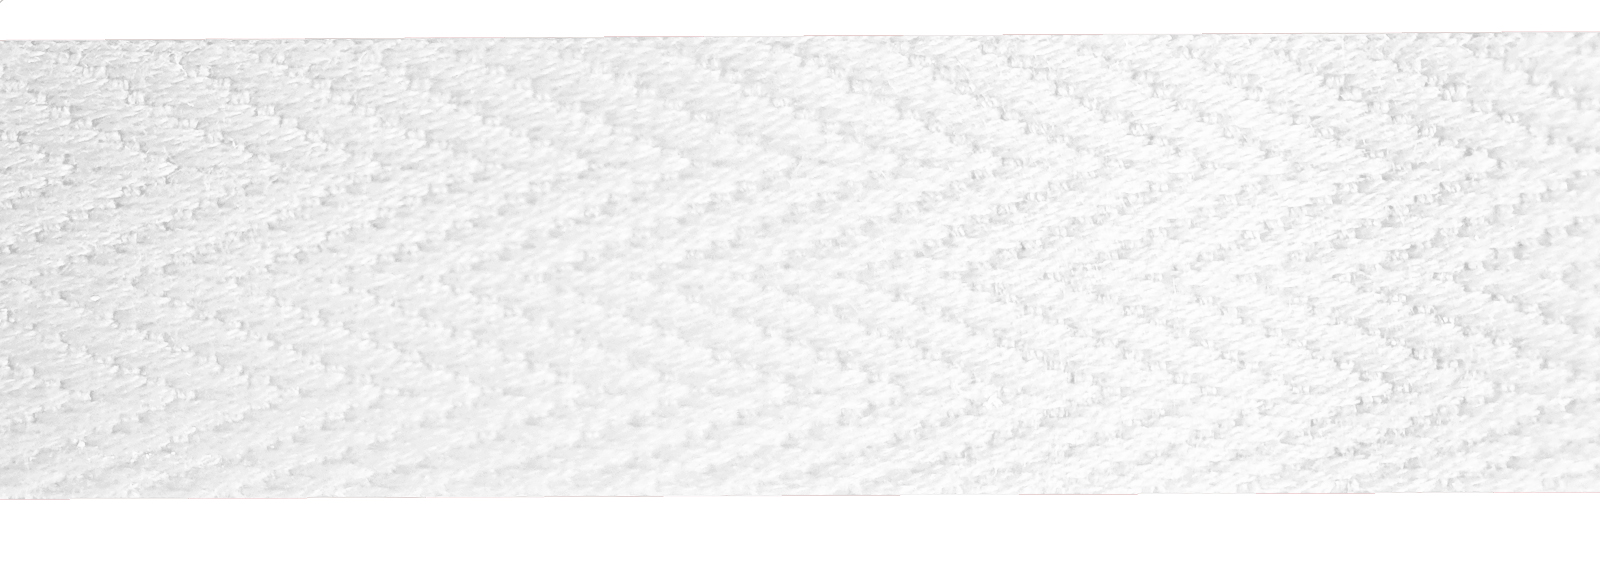 Baumwollband 15 mm weiß, Meterware